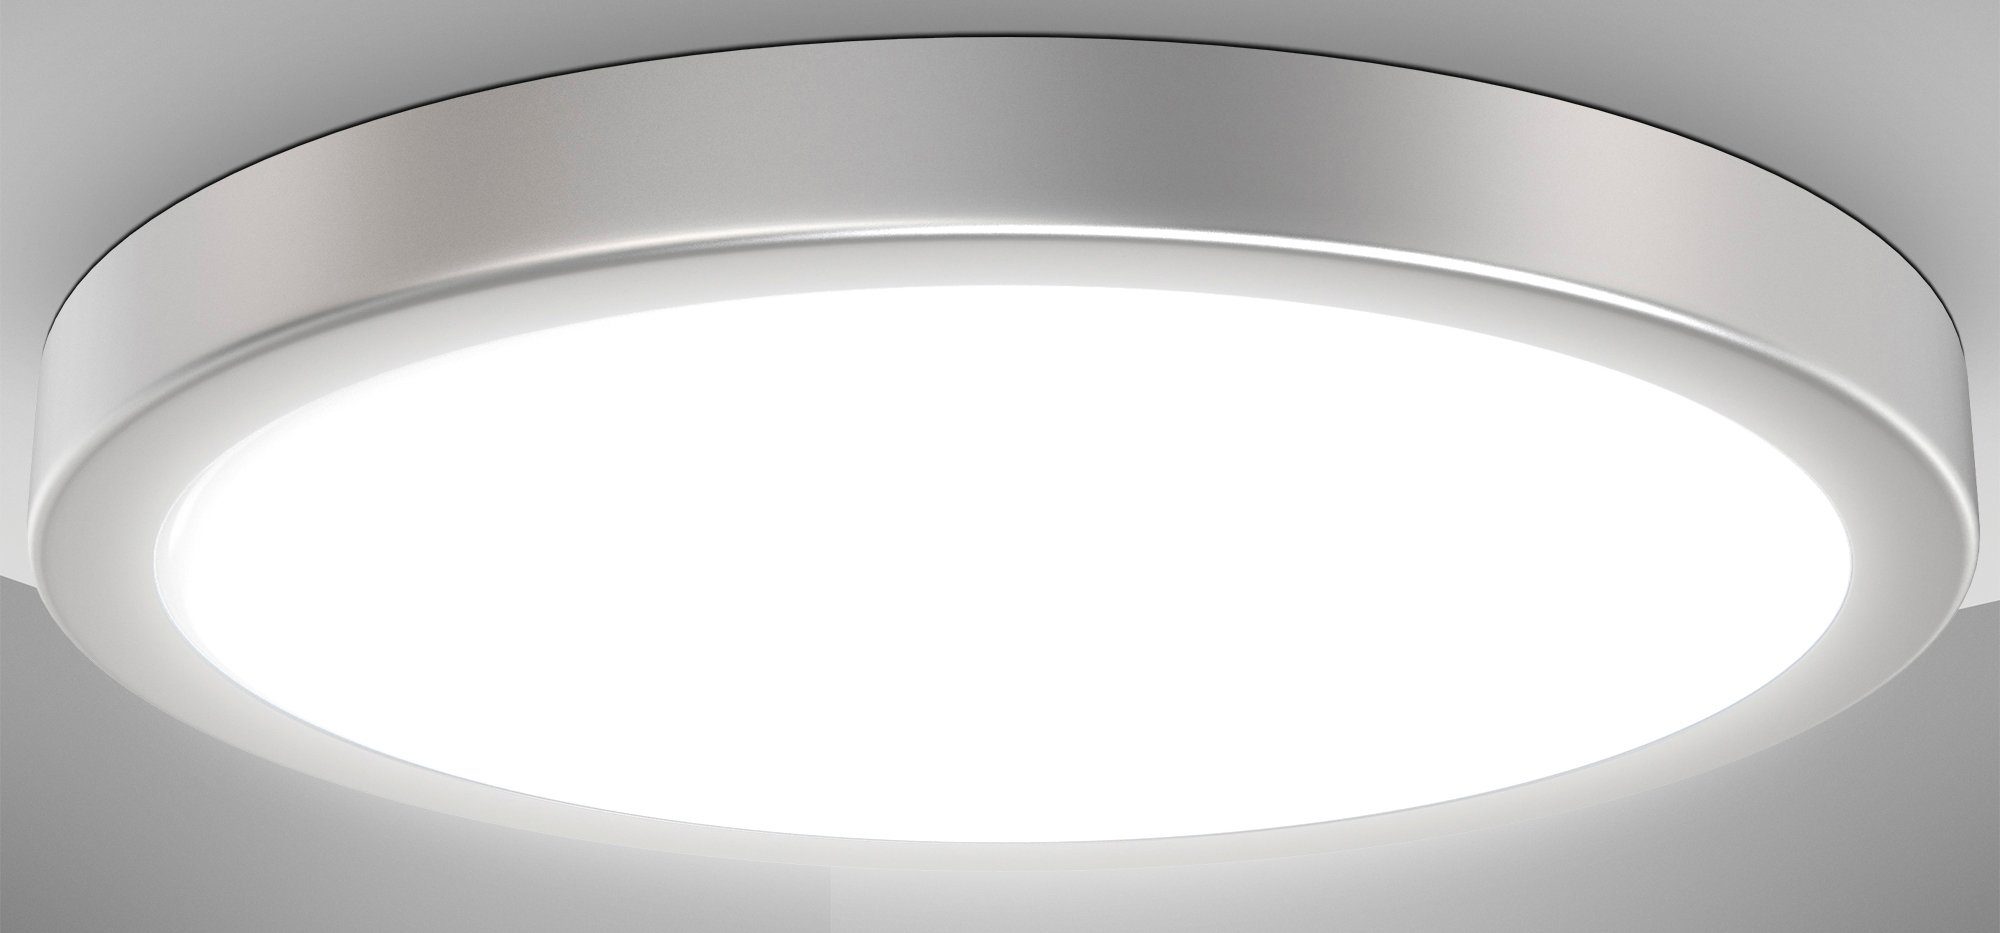 B.K.Licht LED Deckenleuchte BK_DL1537 LED Deckenlampe, Ø38cm, Neutralweißes Licht, Silberfarbig, LED fest integriert, Neutralweiß, 24W, 4.000K, 3.000Lm, Küchenlampe | Deckenlampen